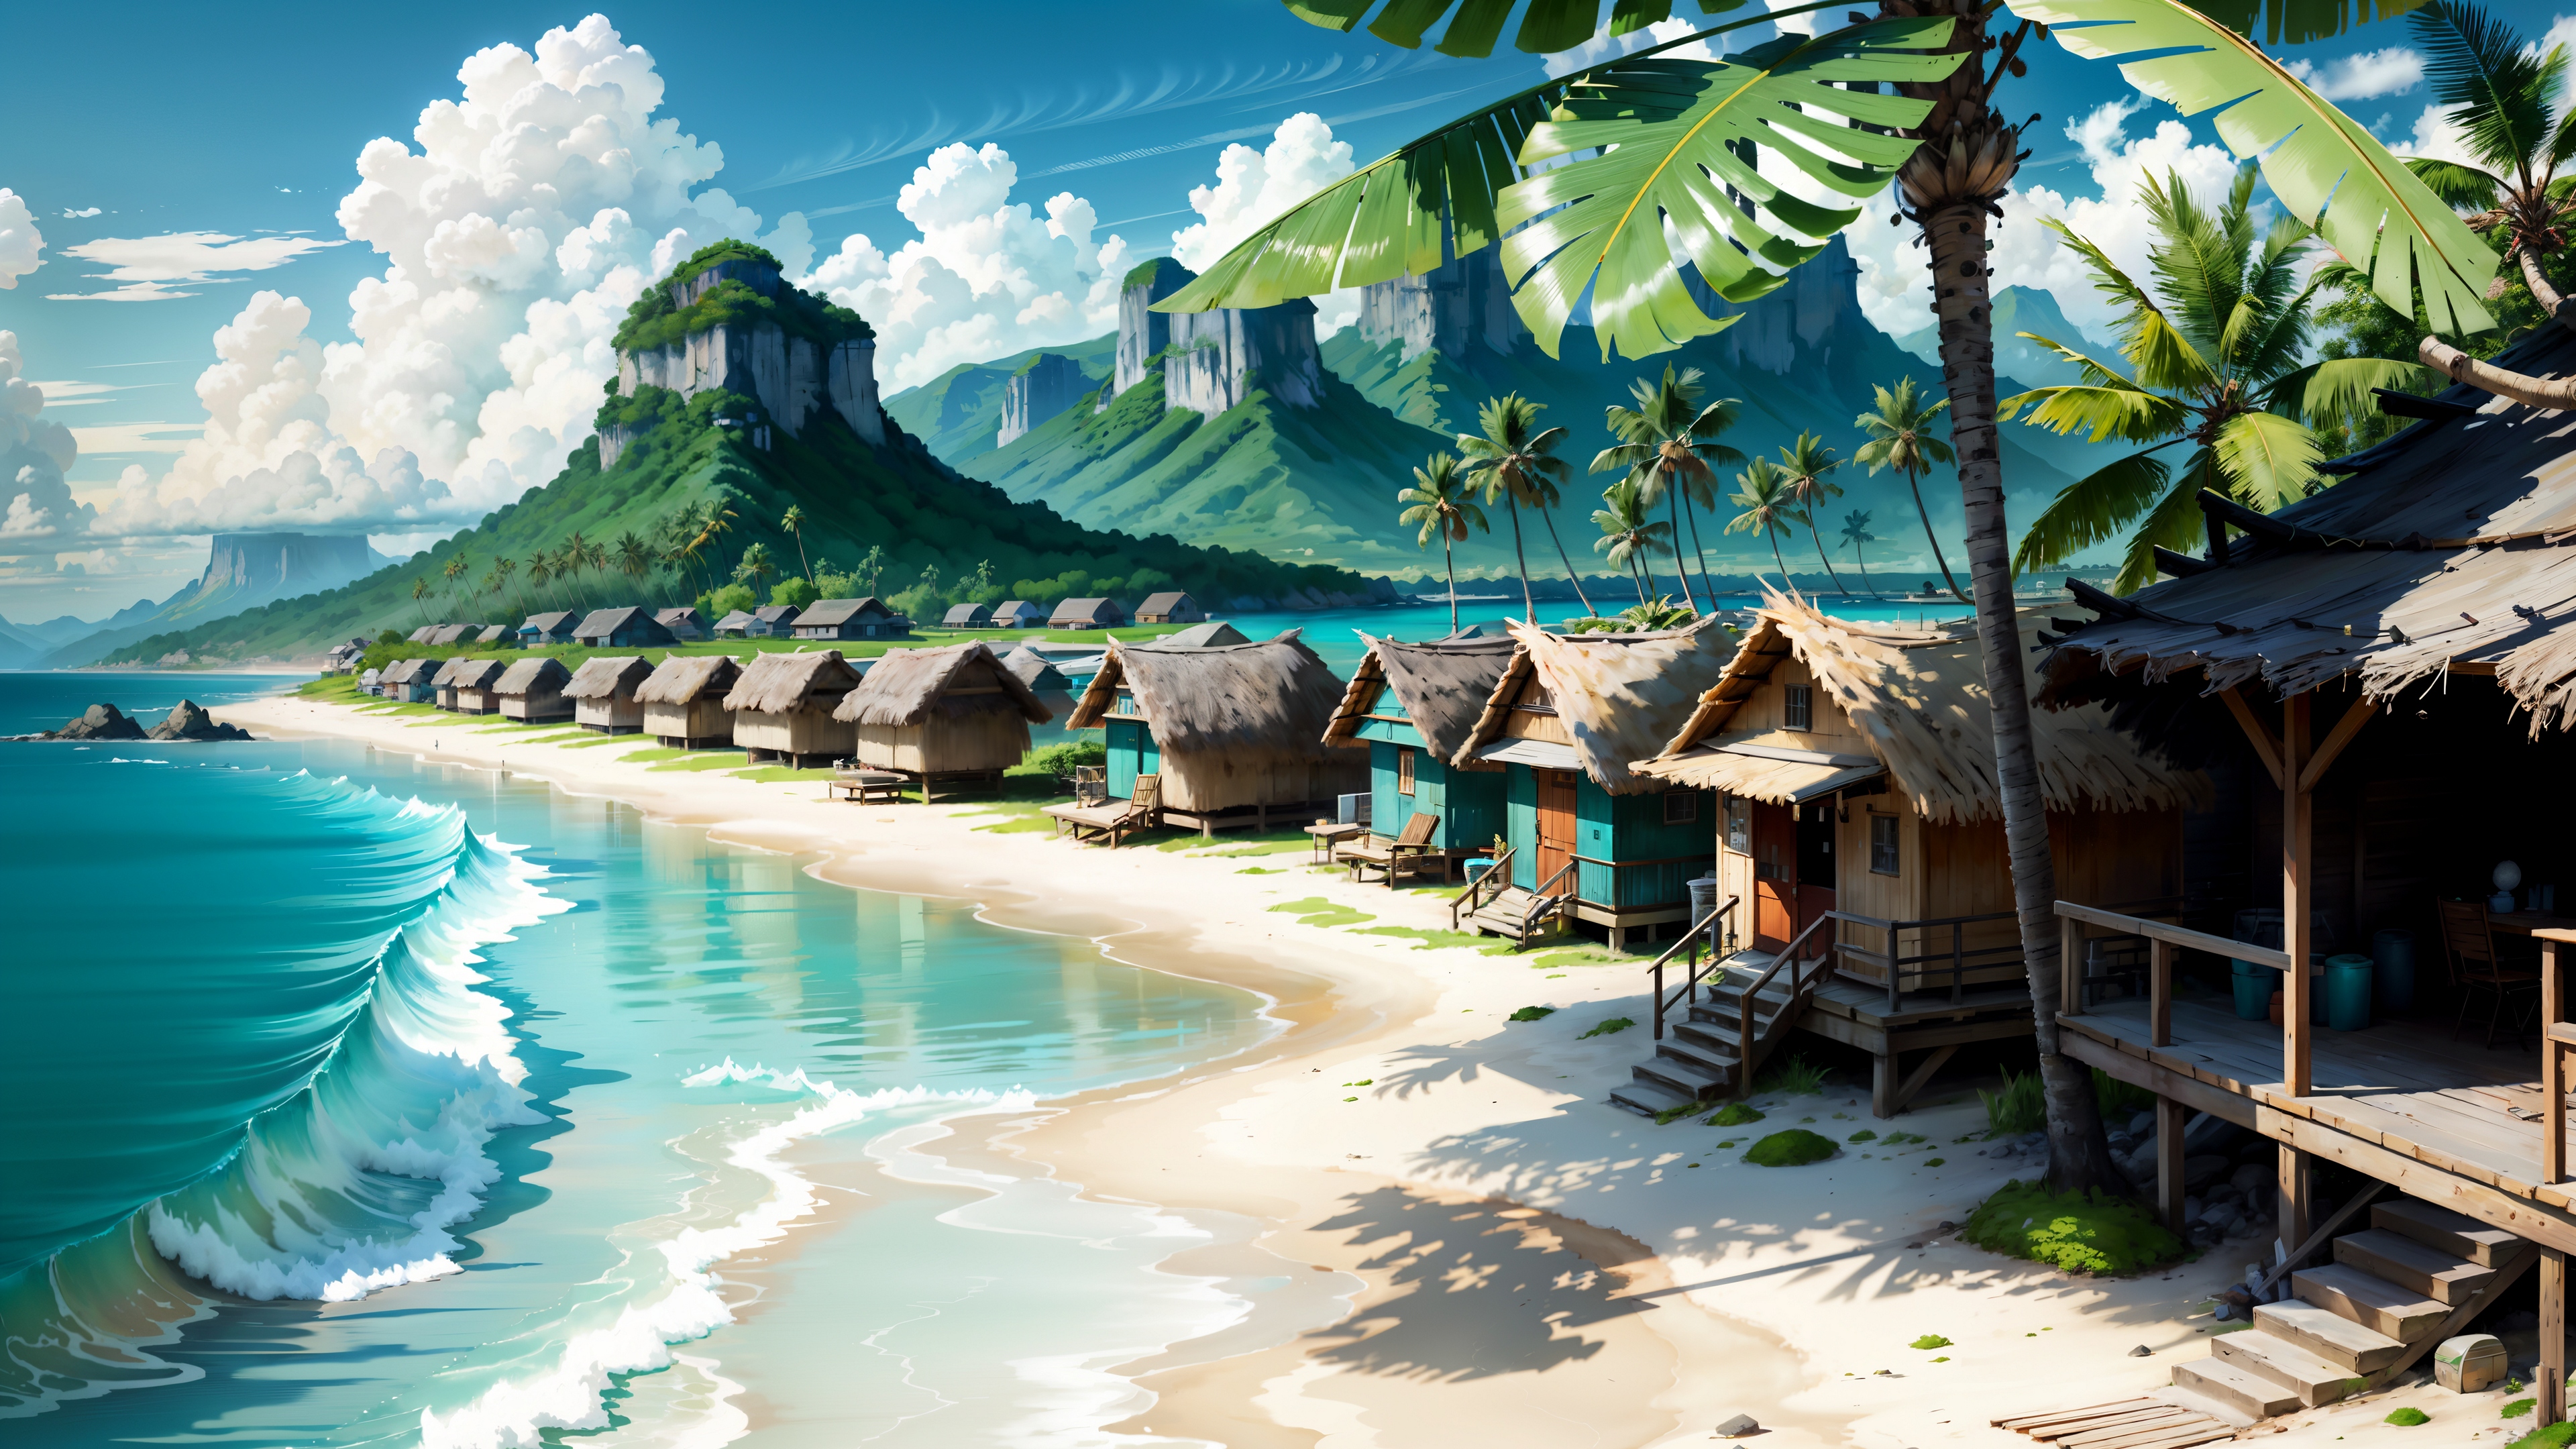 Бесплатное фото Картина деревни на берегу моря в тропической местности